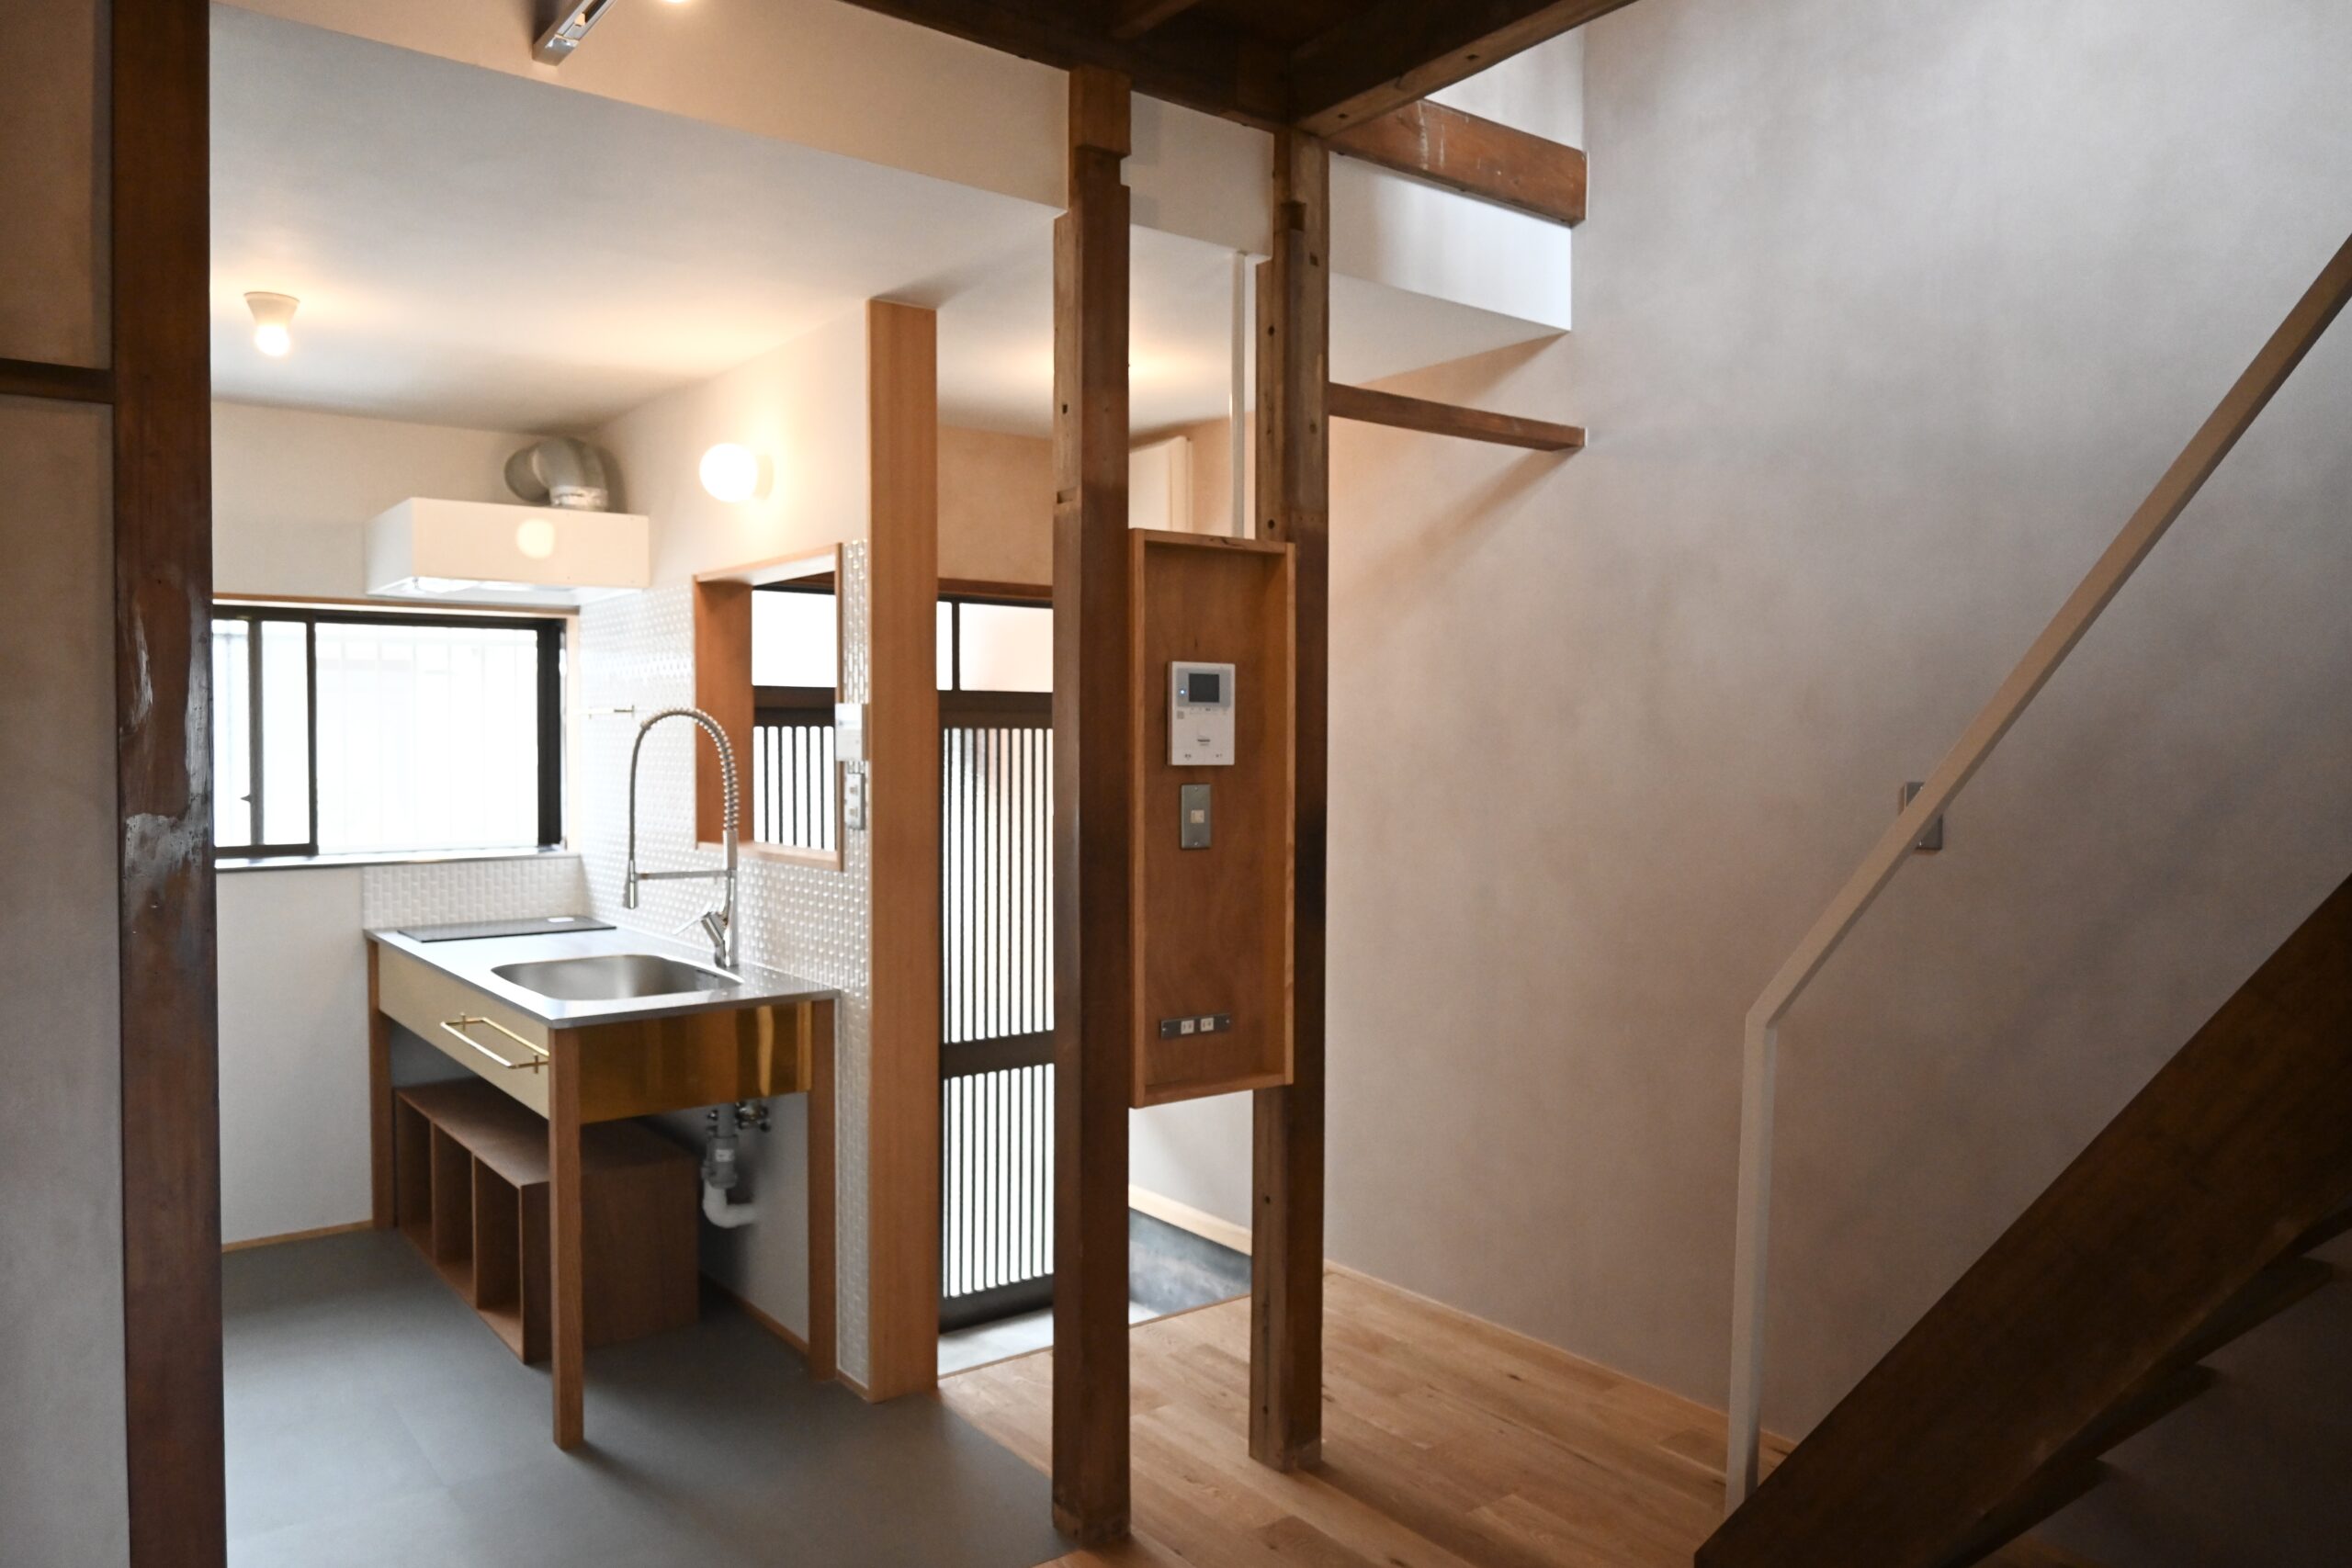 日本家屋の古い柱を生かしたリノベーション、長屋の玄関インターホンスペース、玄関にも便利なコンセントを設置